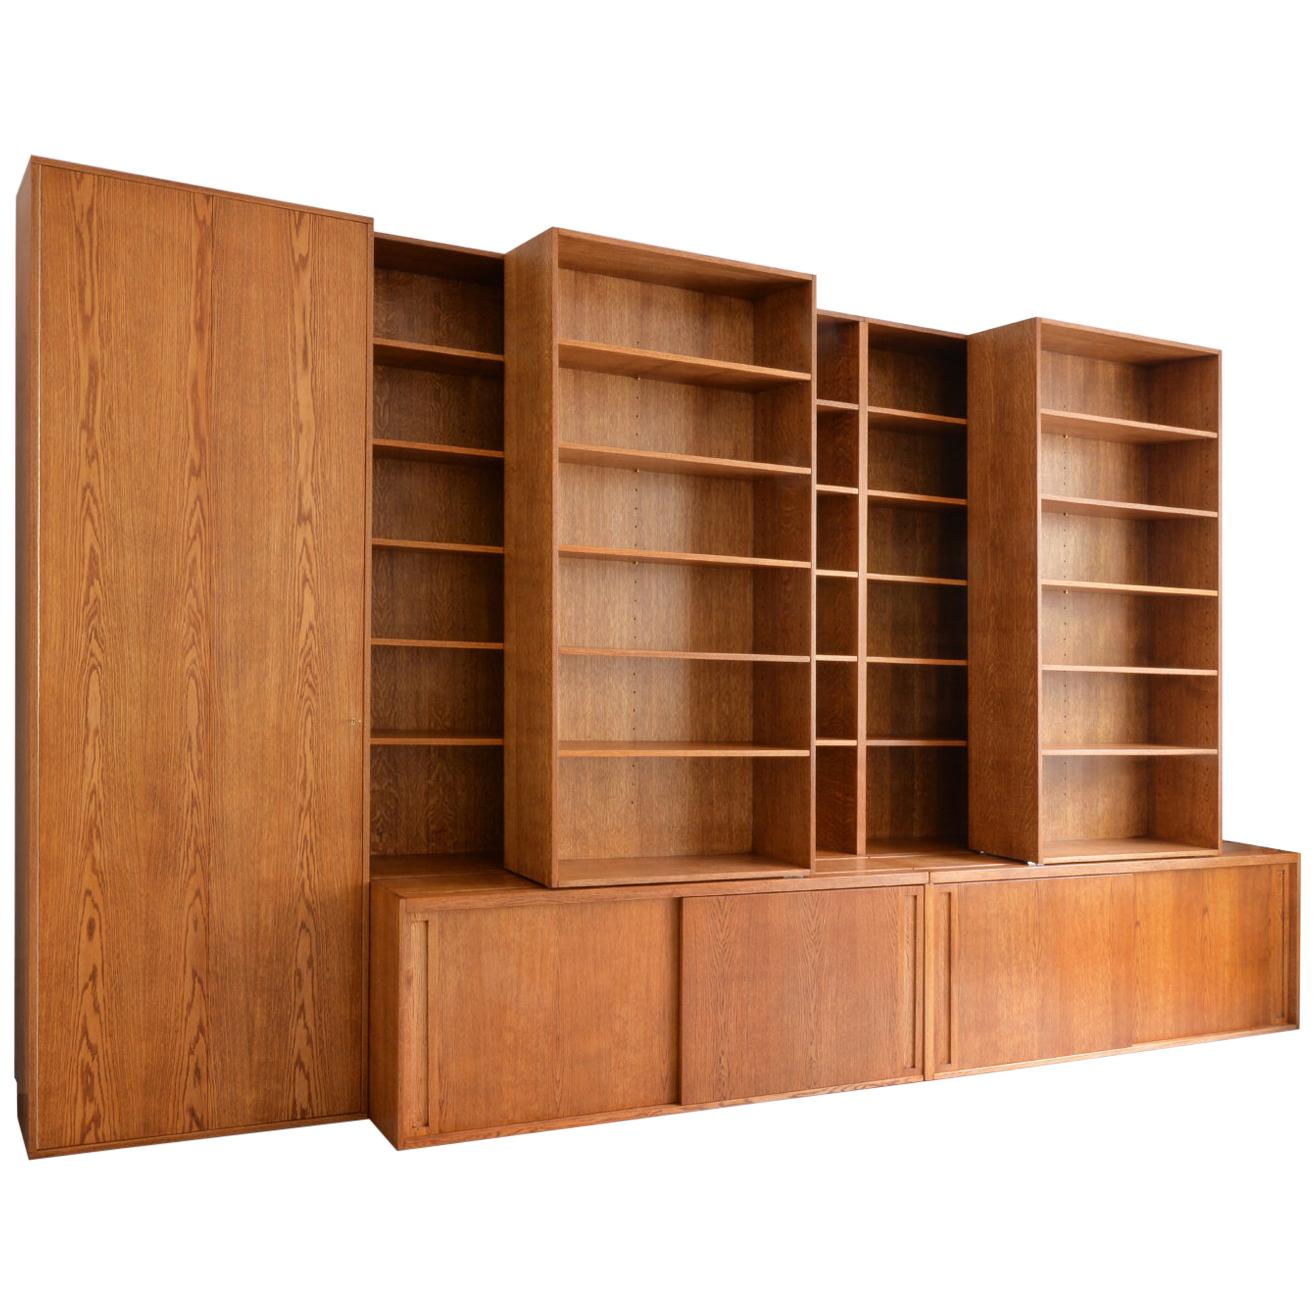 Bibliothèque personnalisée en bois artisanal avec étagères coulissantes et réglables